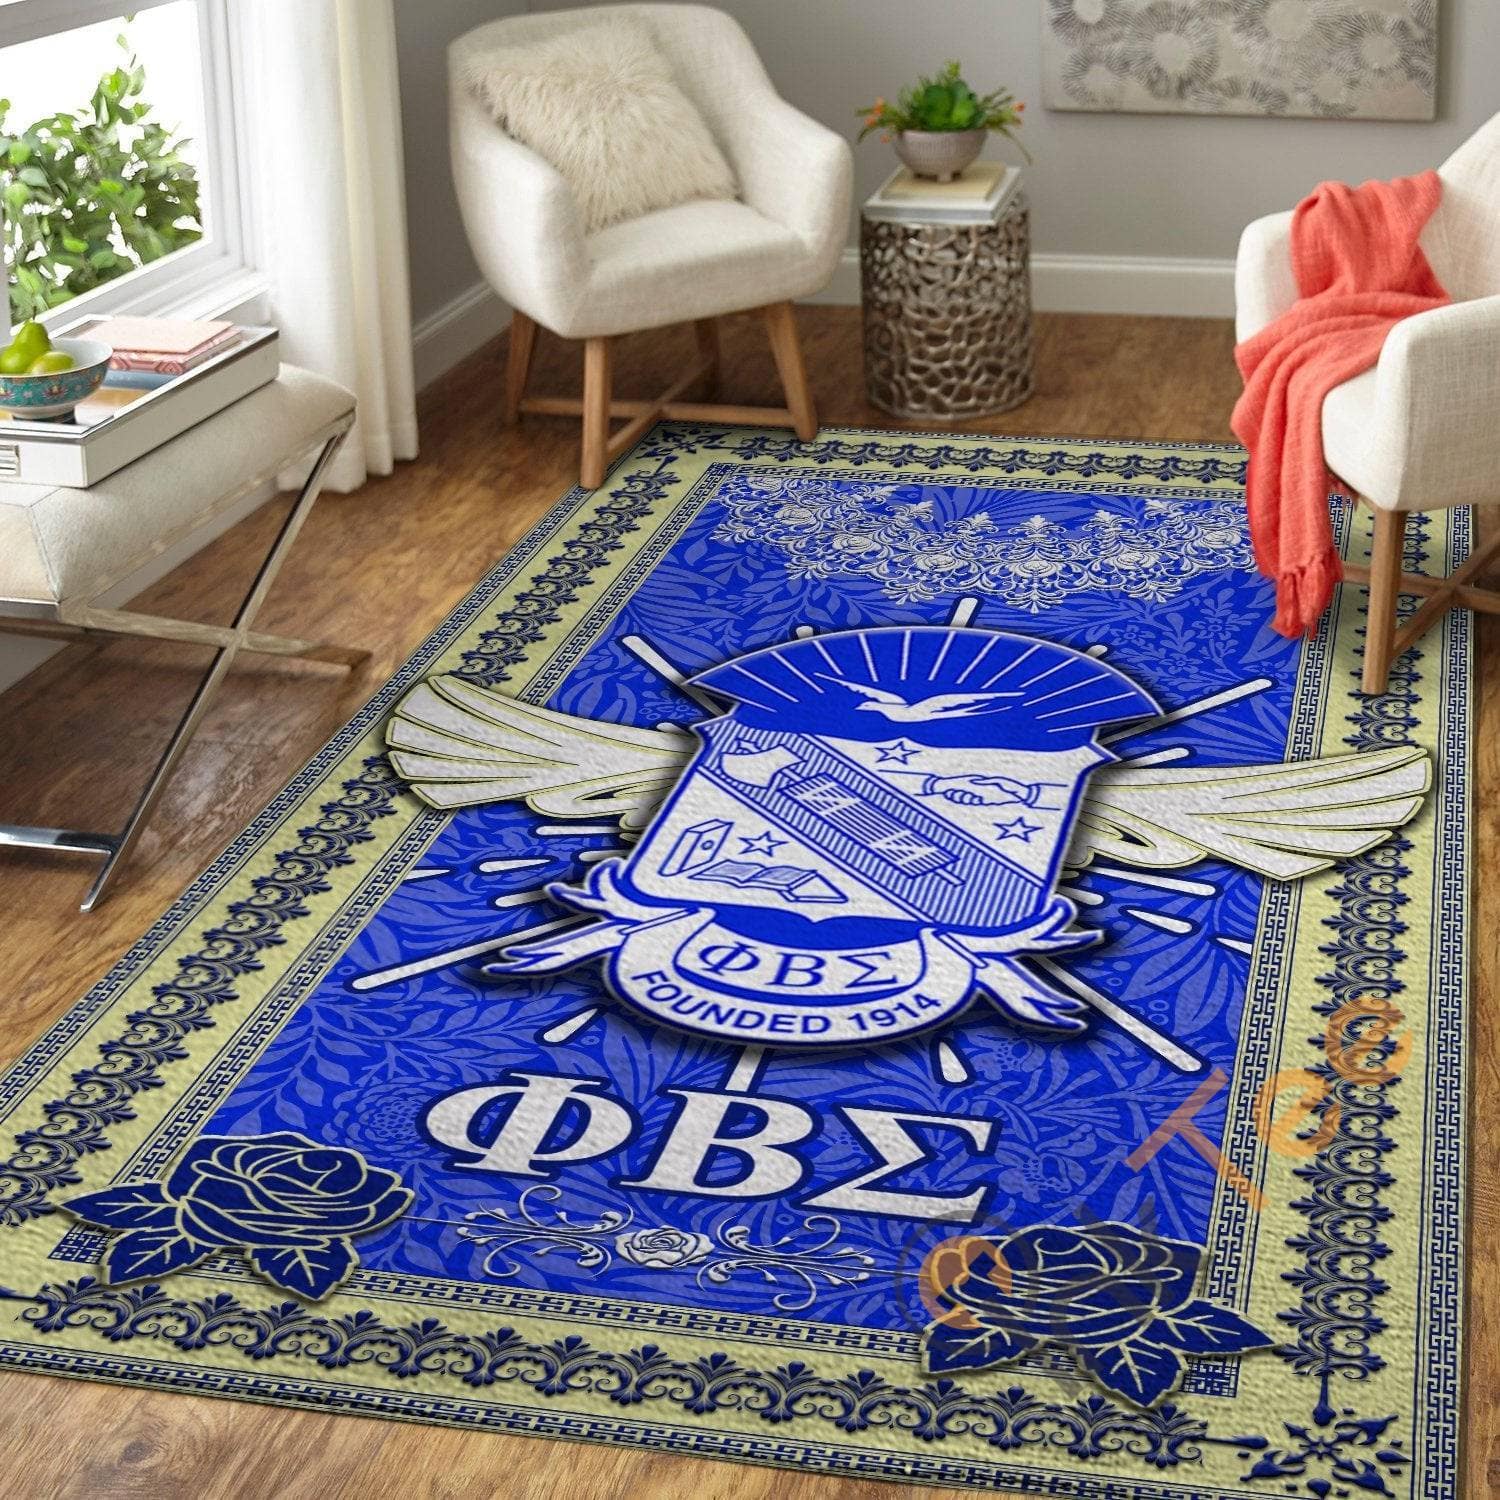 Phi Beta Sigma Soft Livingroom Carpet Highlight For Home Beautiful Rug